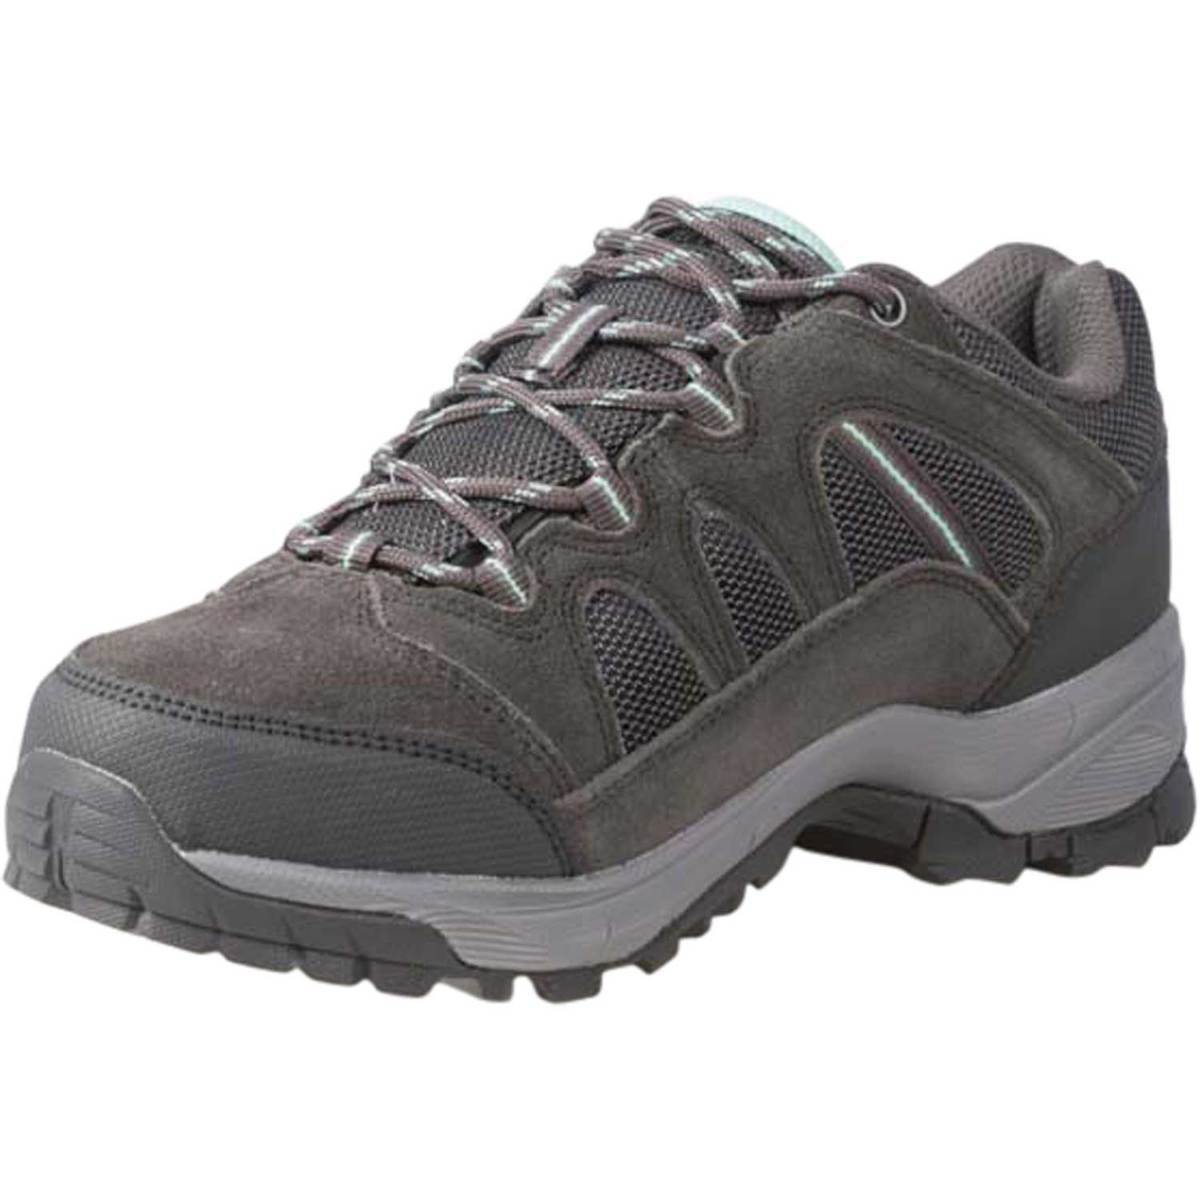 Hi-Tec Women's Wasatch Waterproof Low Hiking Shoes - Charcoal - Size 6 ...